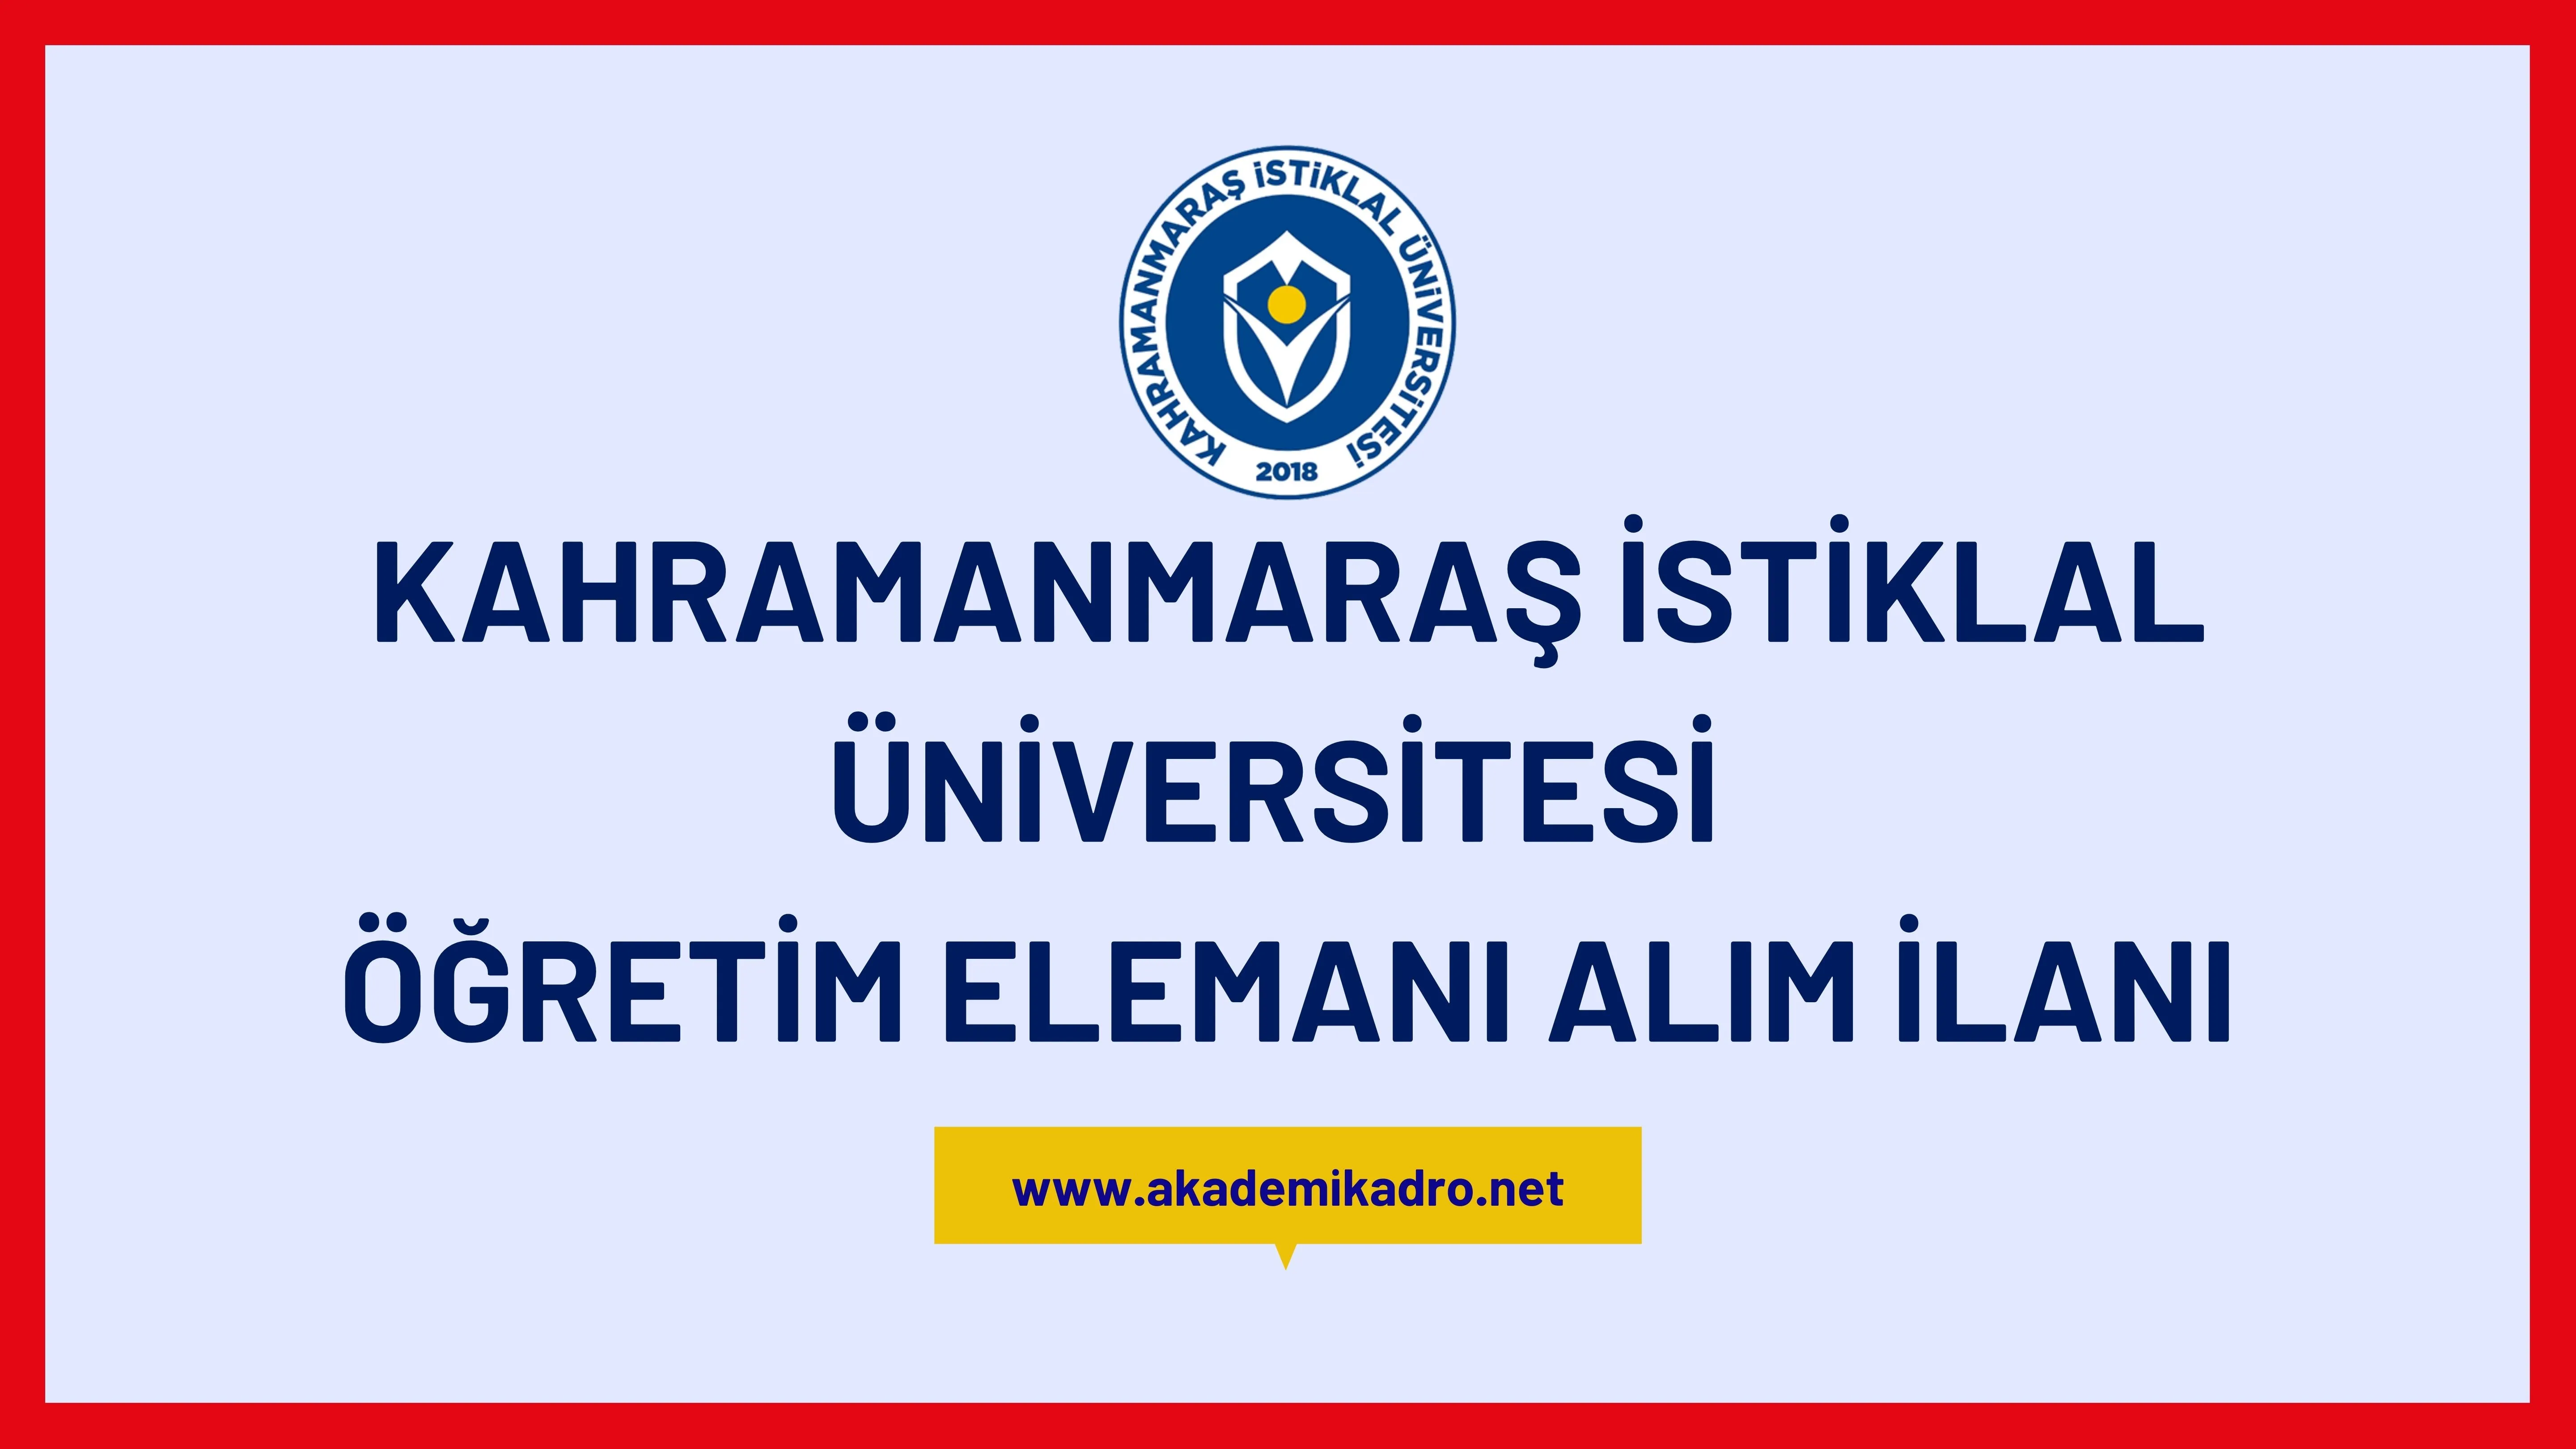 Kahramanmaraş İstiklal Üniversitesi 2 Öğretim Görevlisi alacaktır.